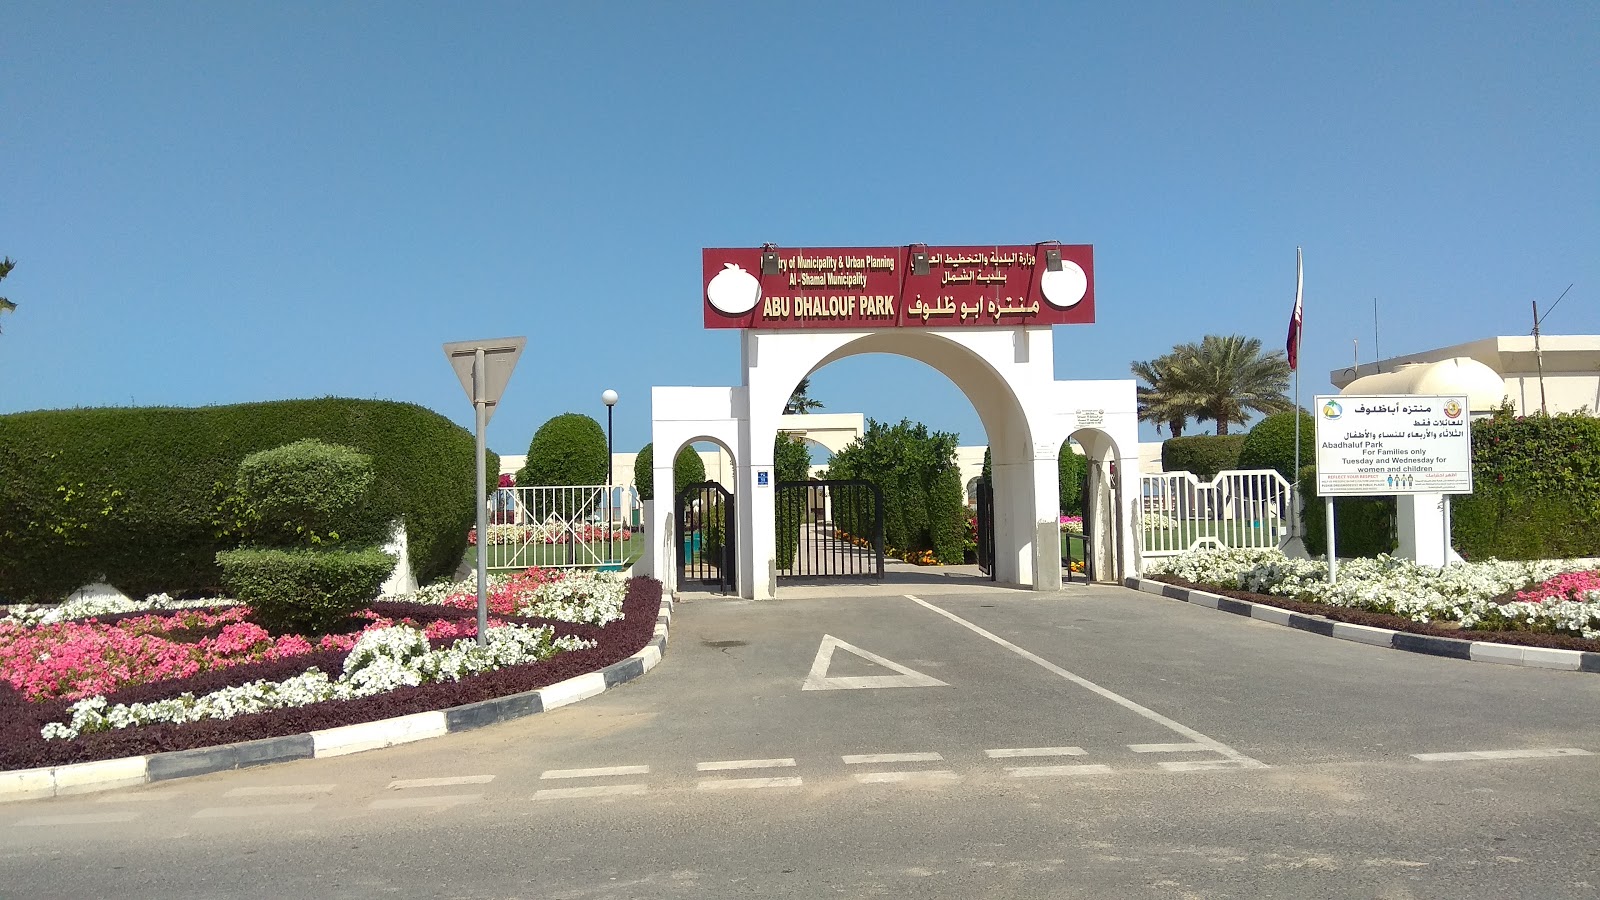 Abu Dhalouf Park